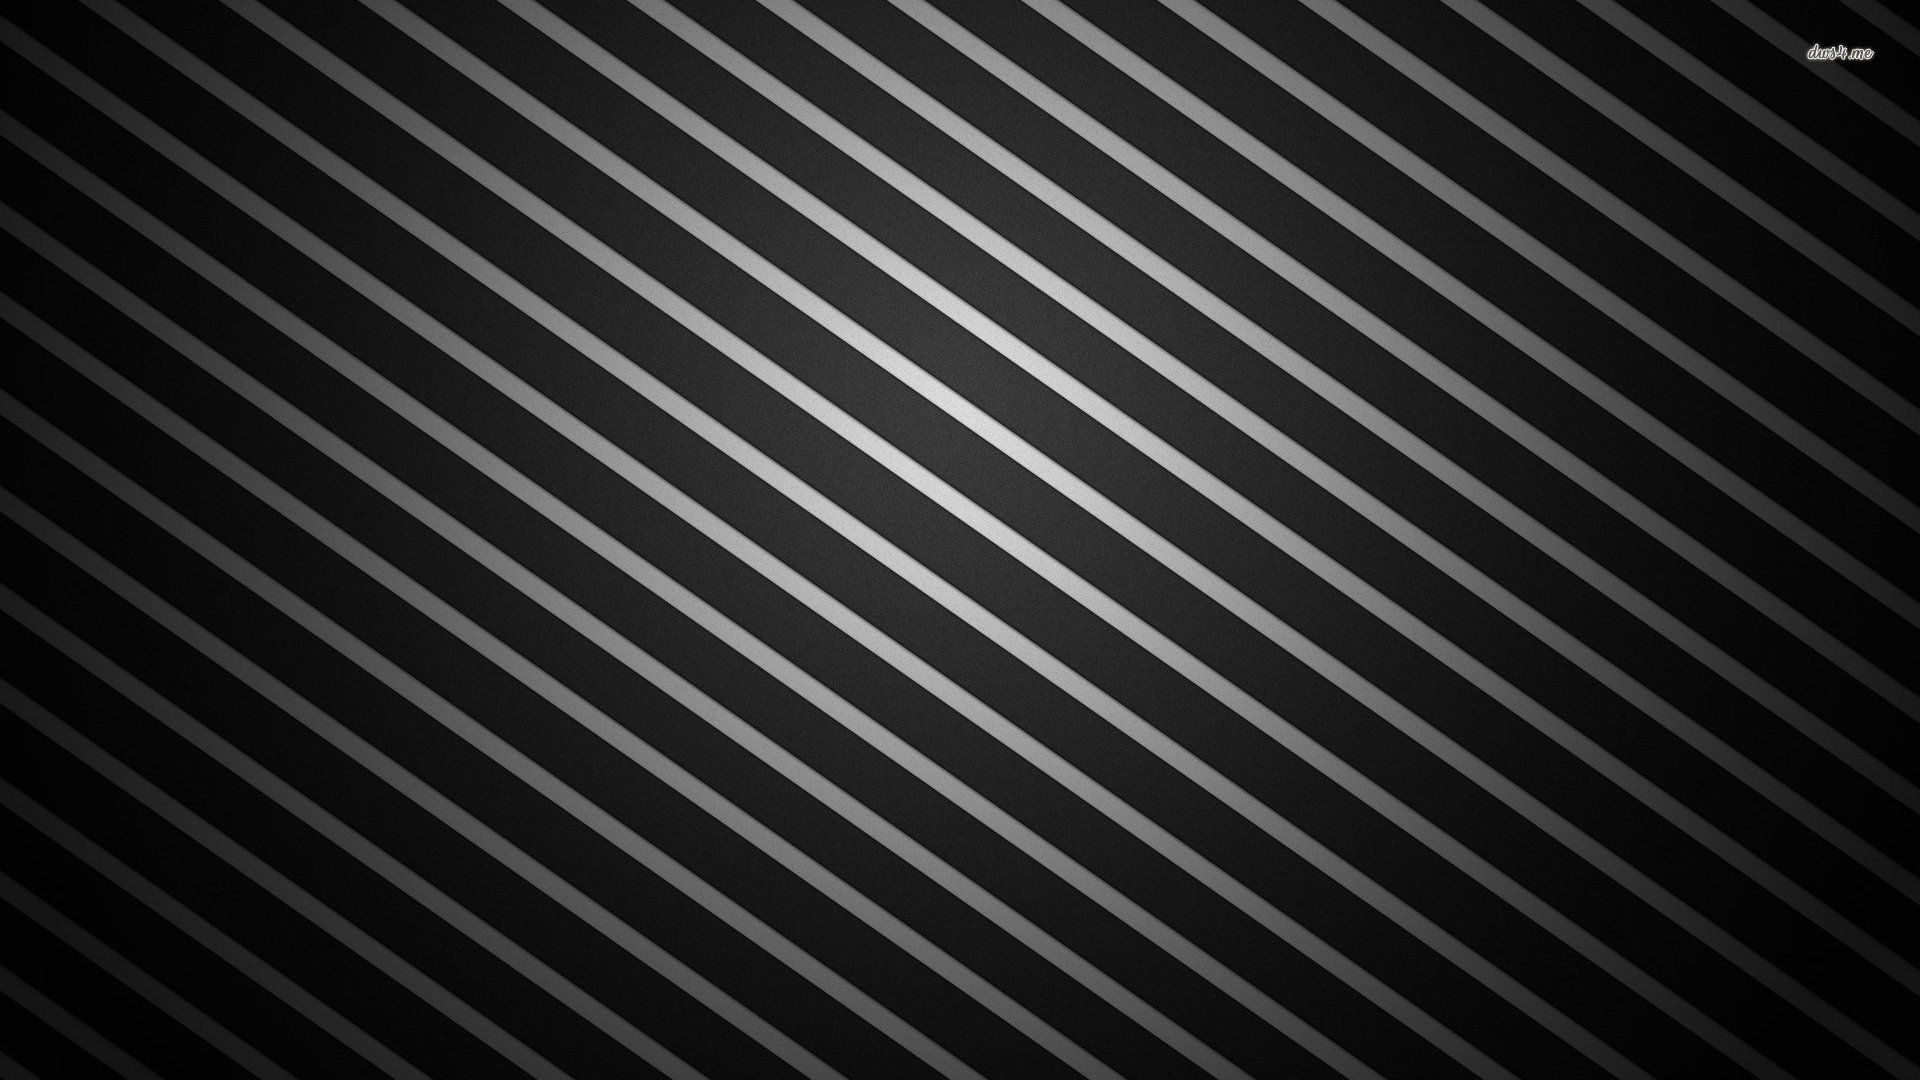 Black Silver Wallpaper - WallpaperSafari